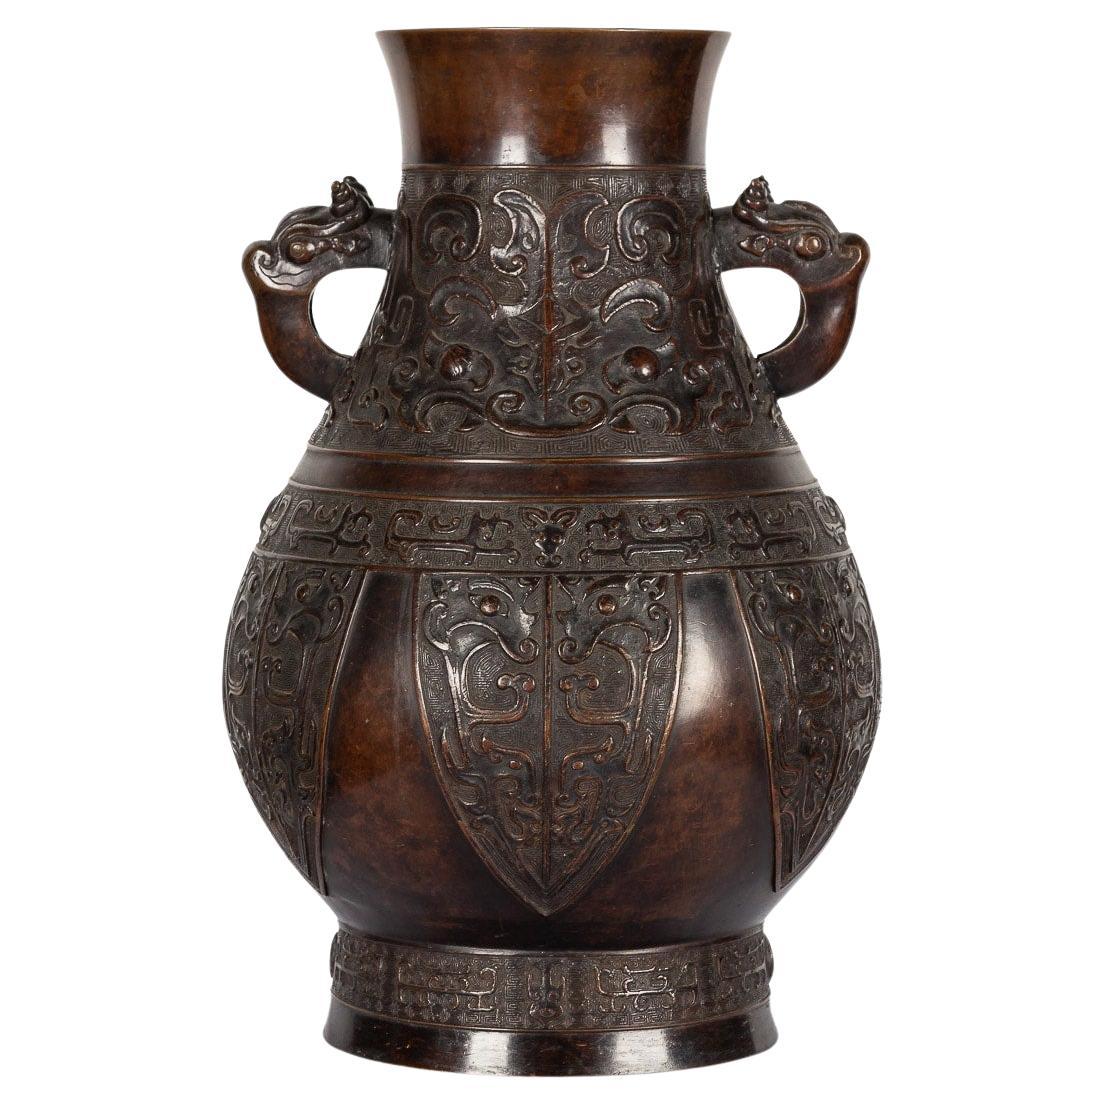 Vase chinois en bronze archaïque du 19ème siècle, vers 1850